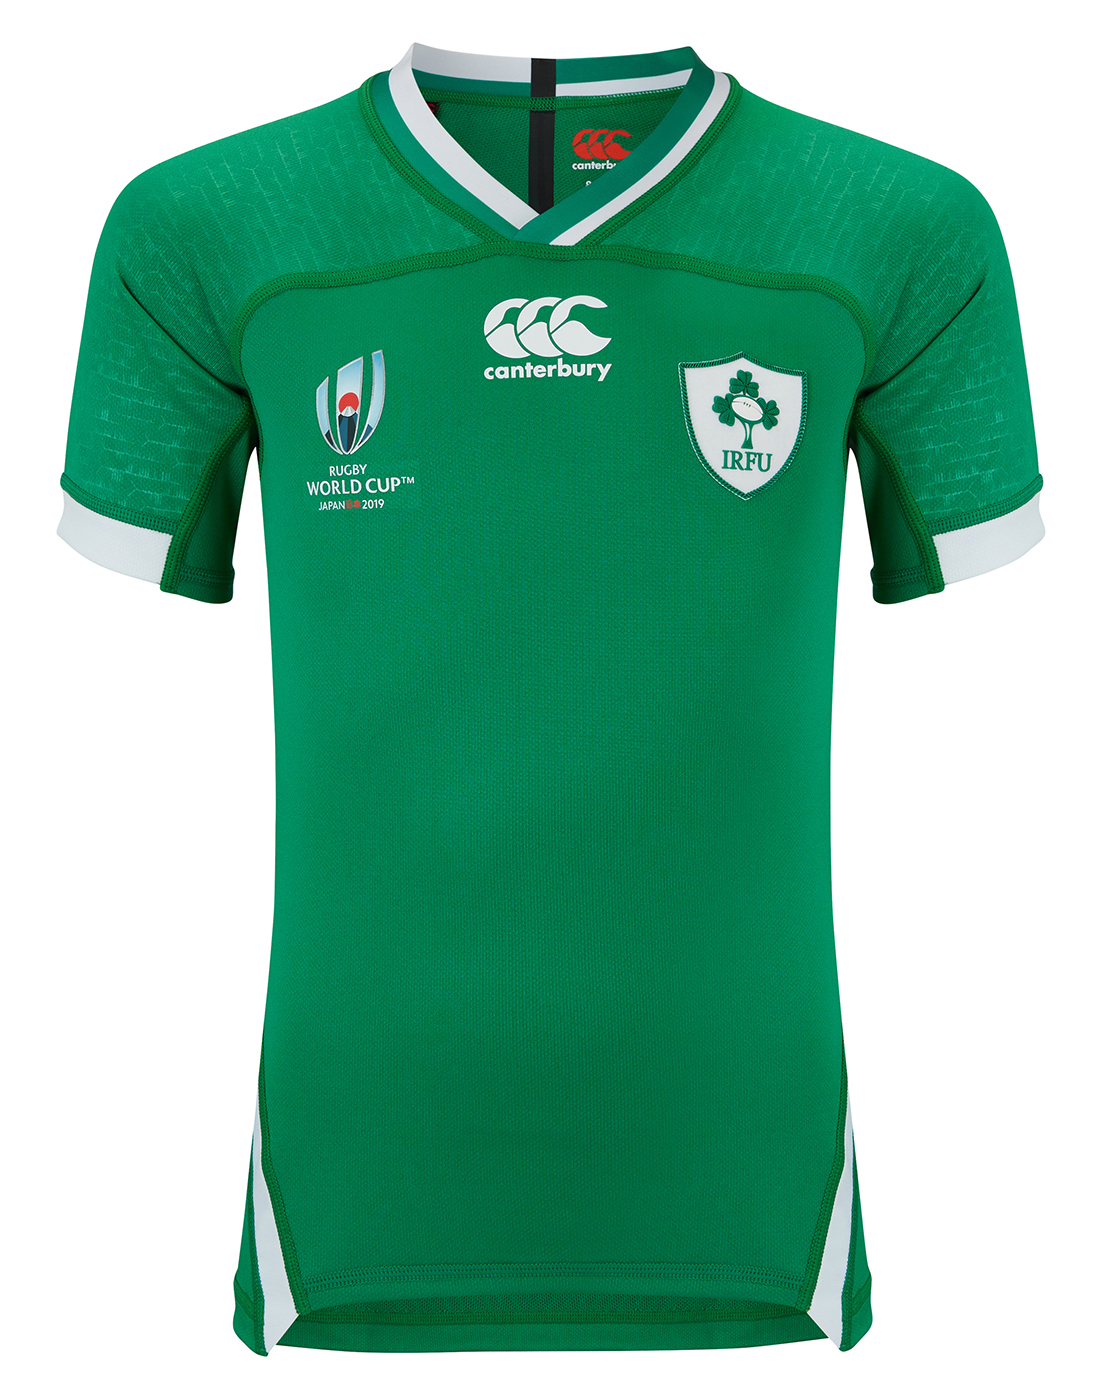 irish rugby sweatshirt